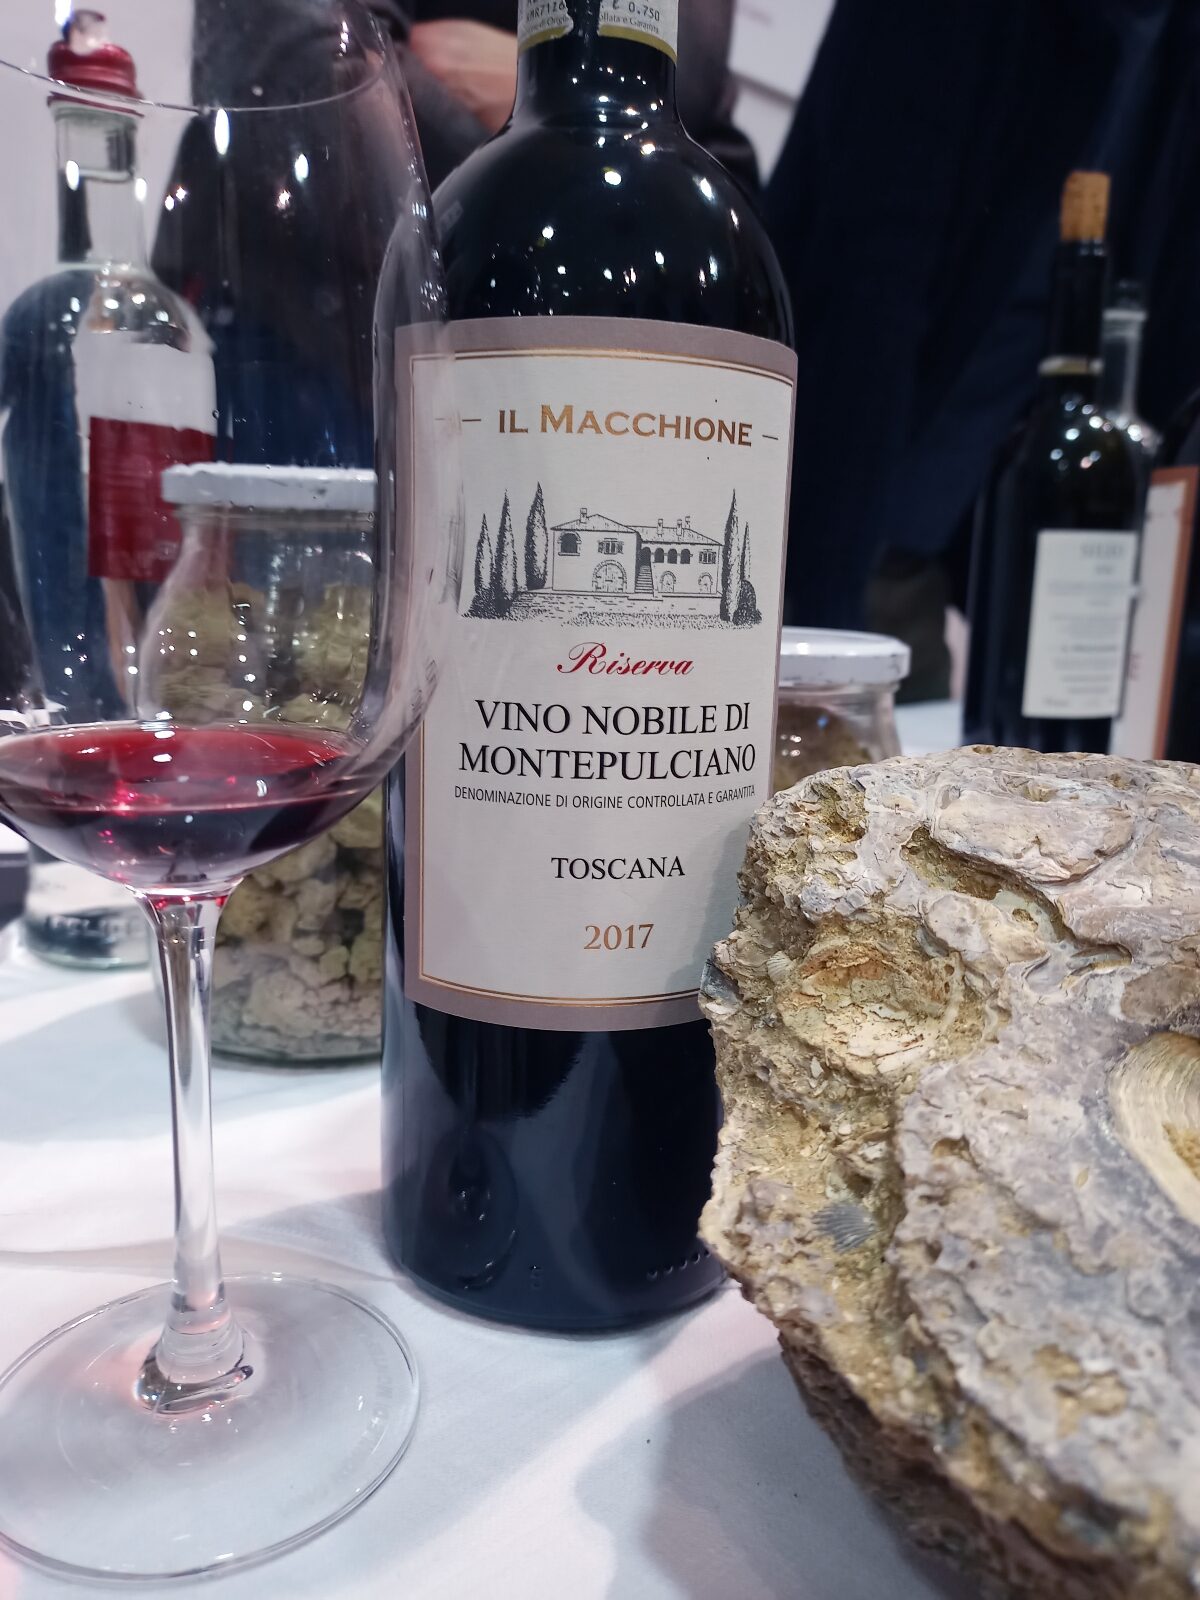 Vino Nobile Riserva 2017 Il Macchione, articolo: Anteprima Vino Nobile di Montepulciano 2023, foto di Cristina Santini